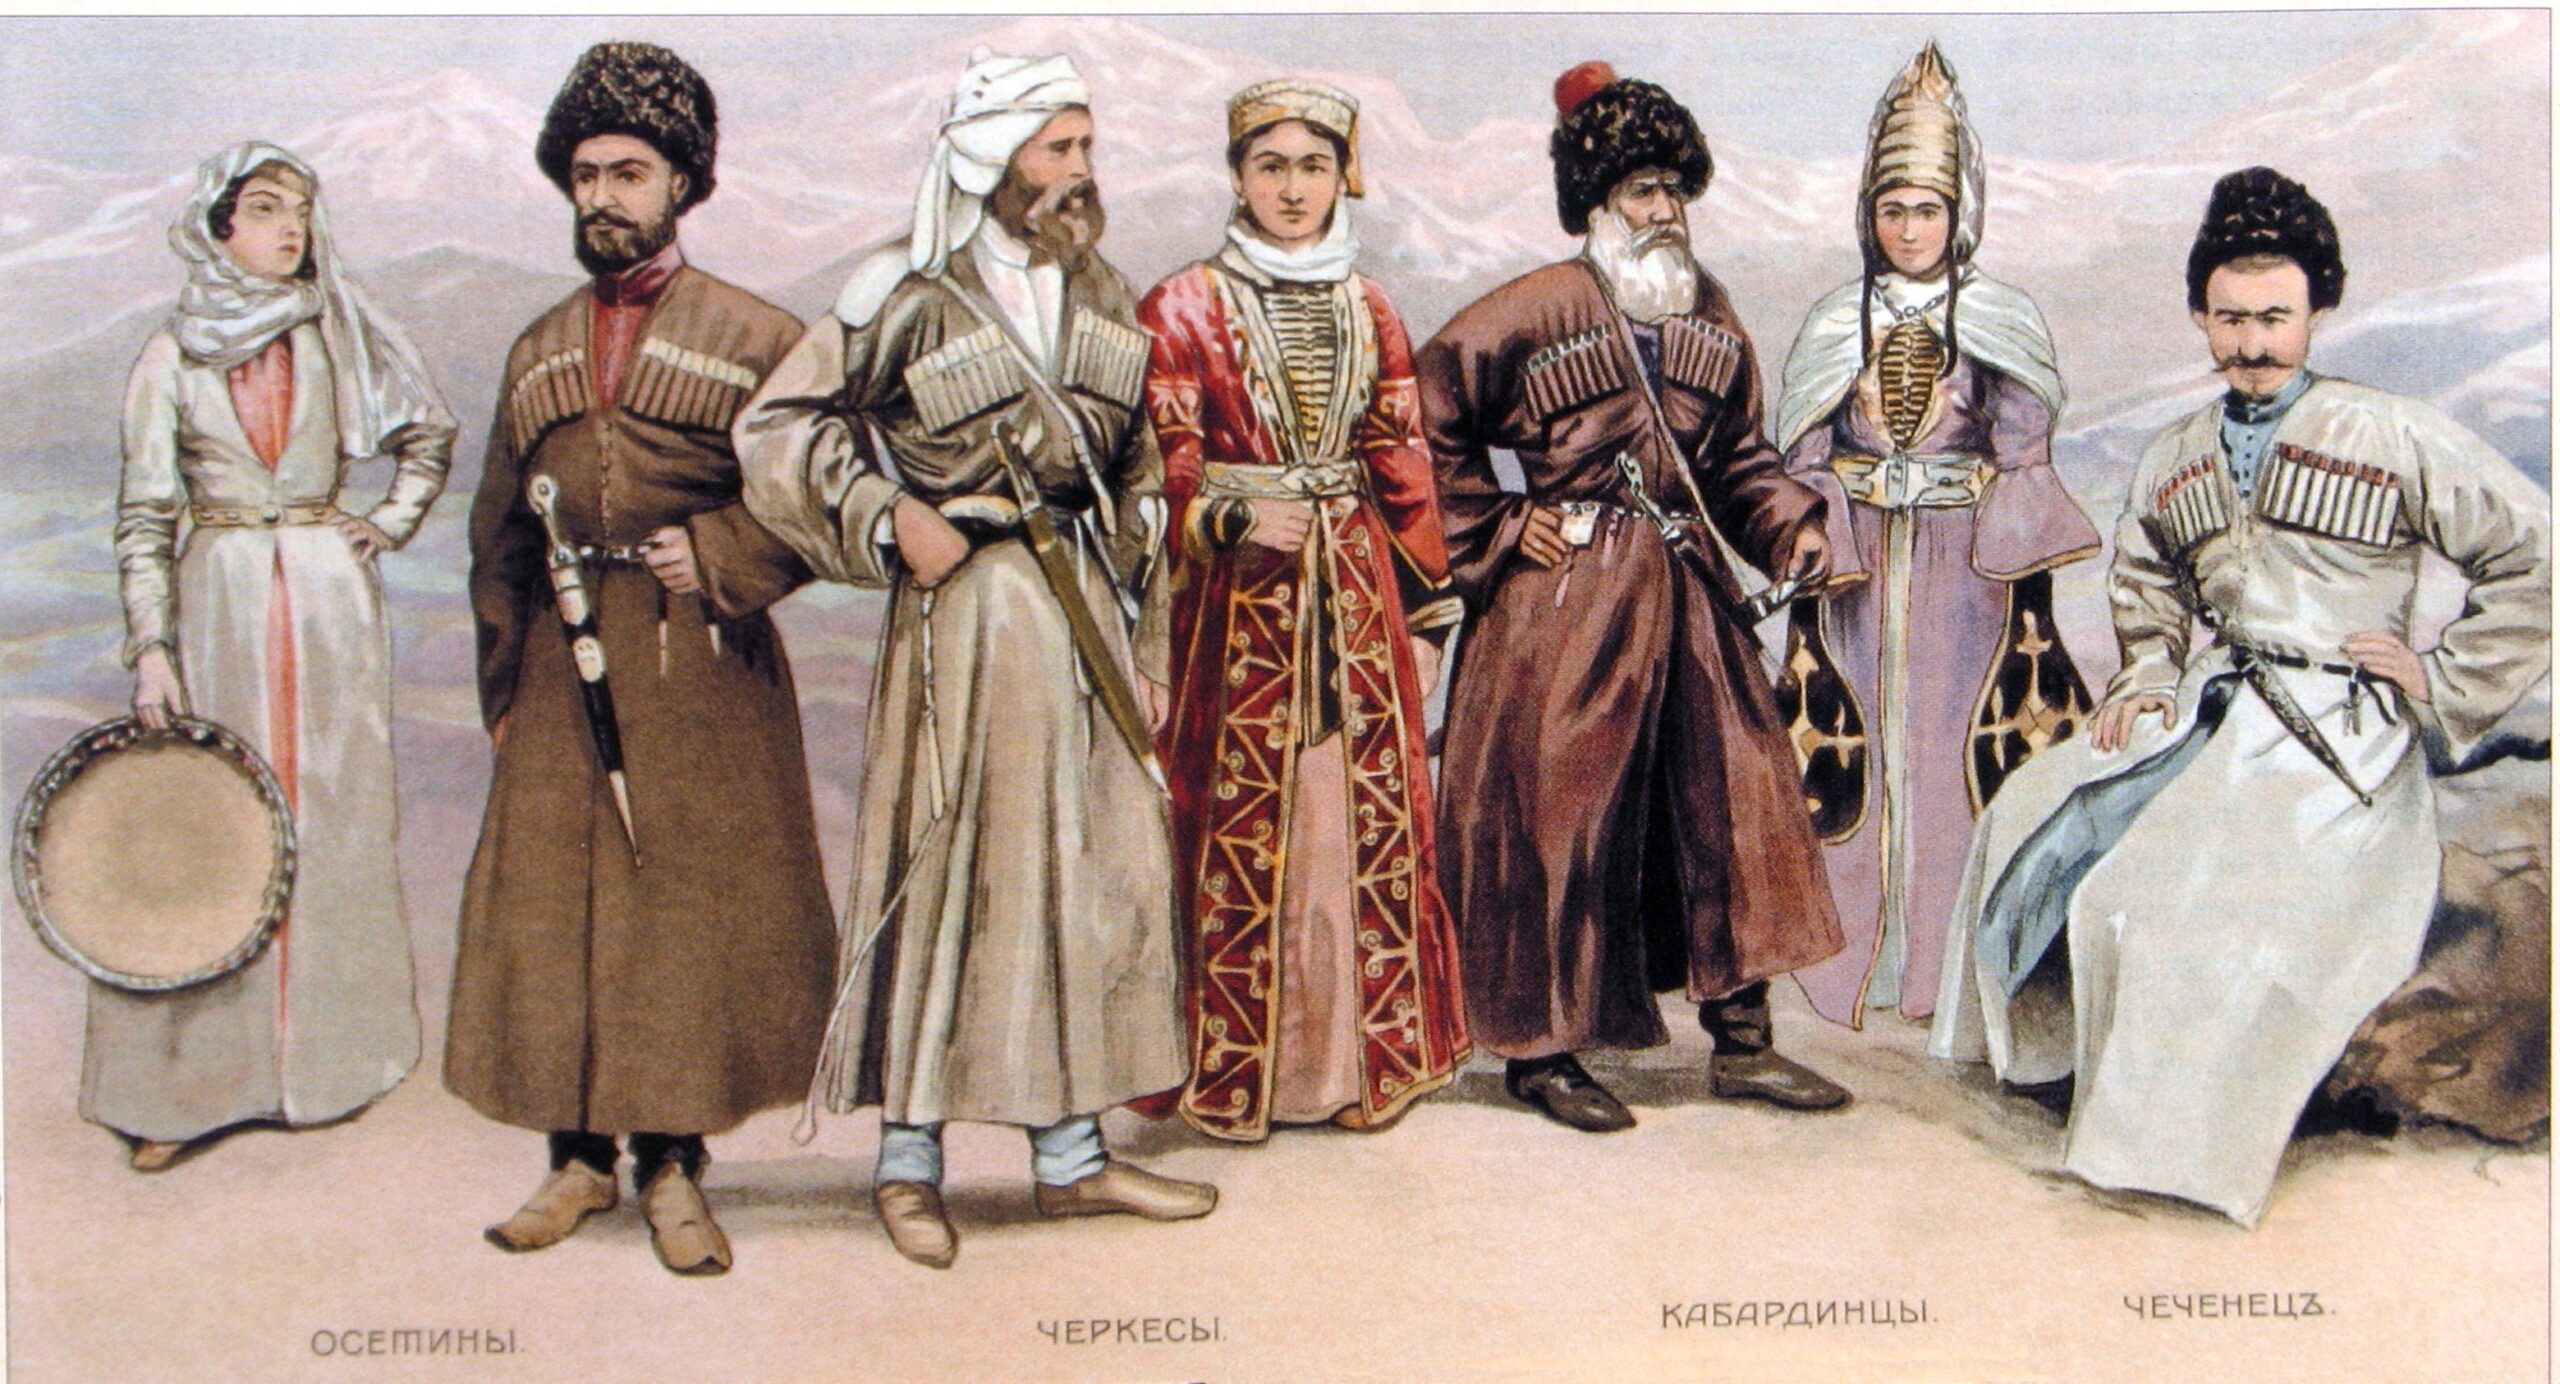 Costume populare din Caucazul de Nord osetinii⁠(d), cerchezi, karbadieni și ceceni